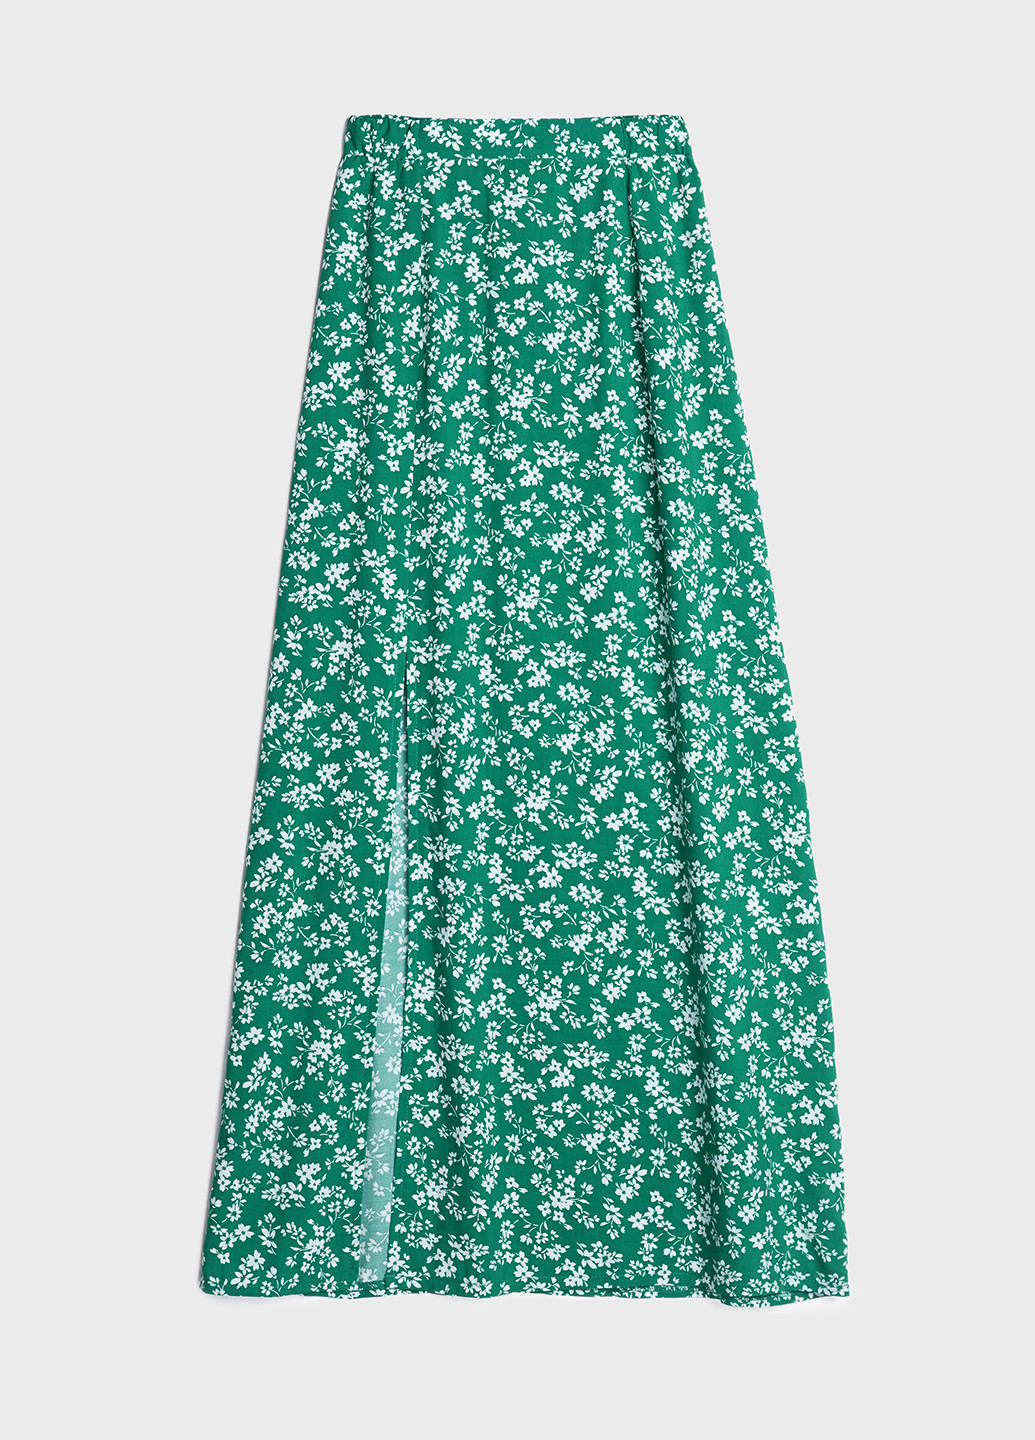 Зеленая кэжуал цветочной расцветки юбка KASTA design а-силуэта (трапеция)